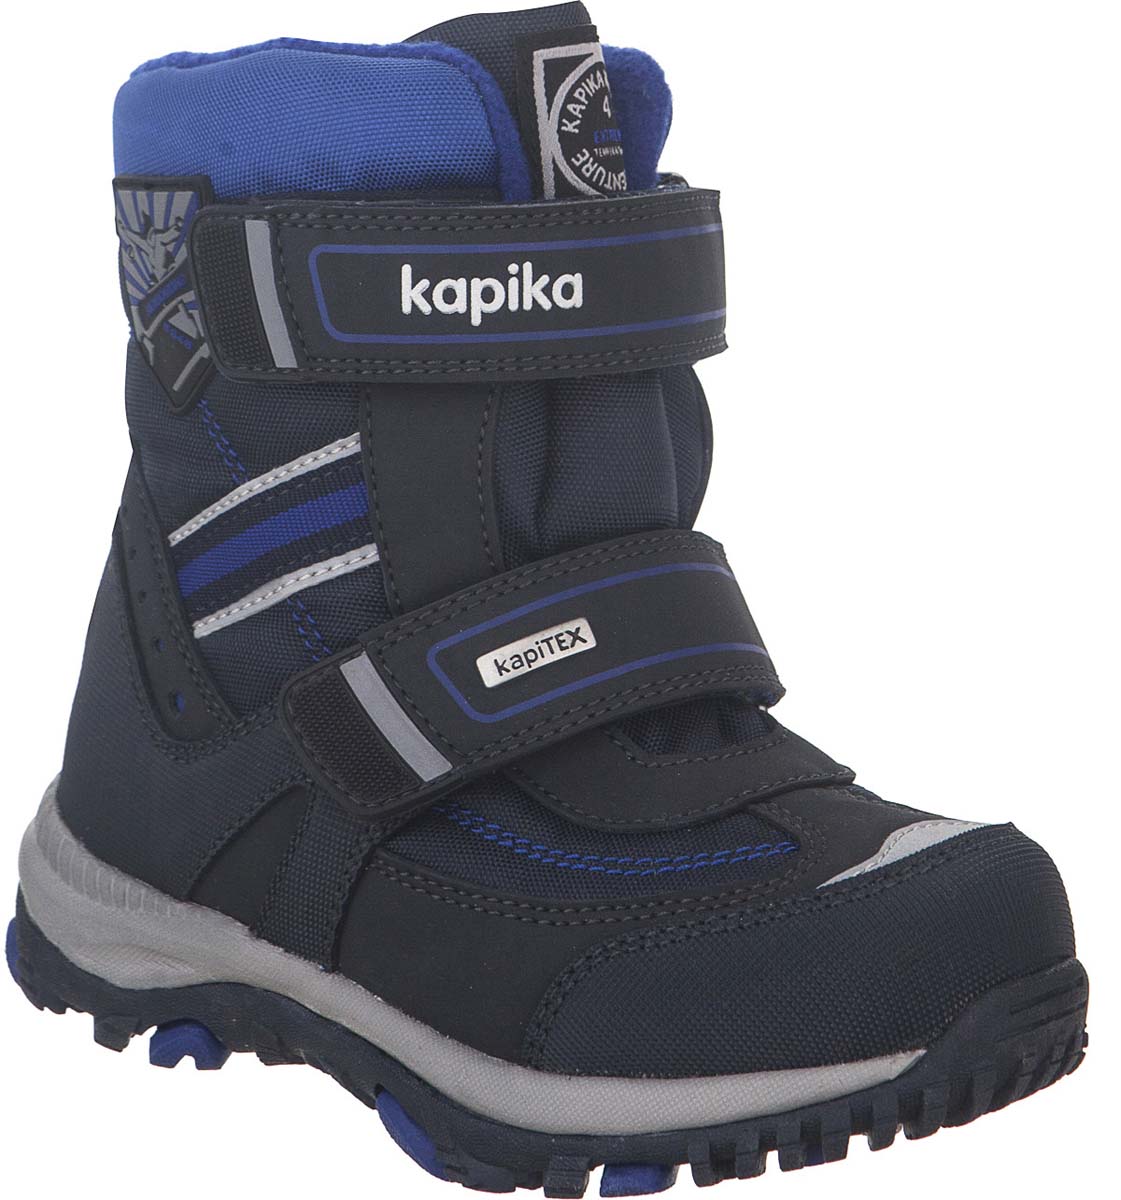 Ботинки для мальчика Kapika KapiTEX, цвет: темно-синий. 42204-2. Размер 32